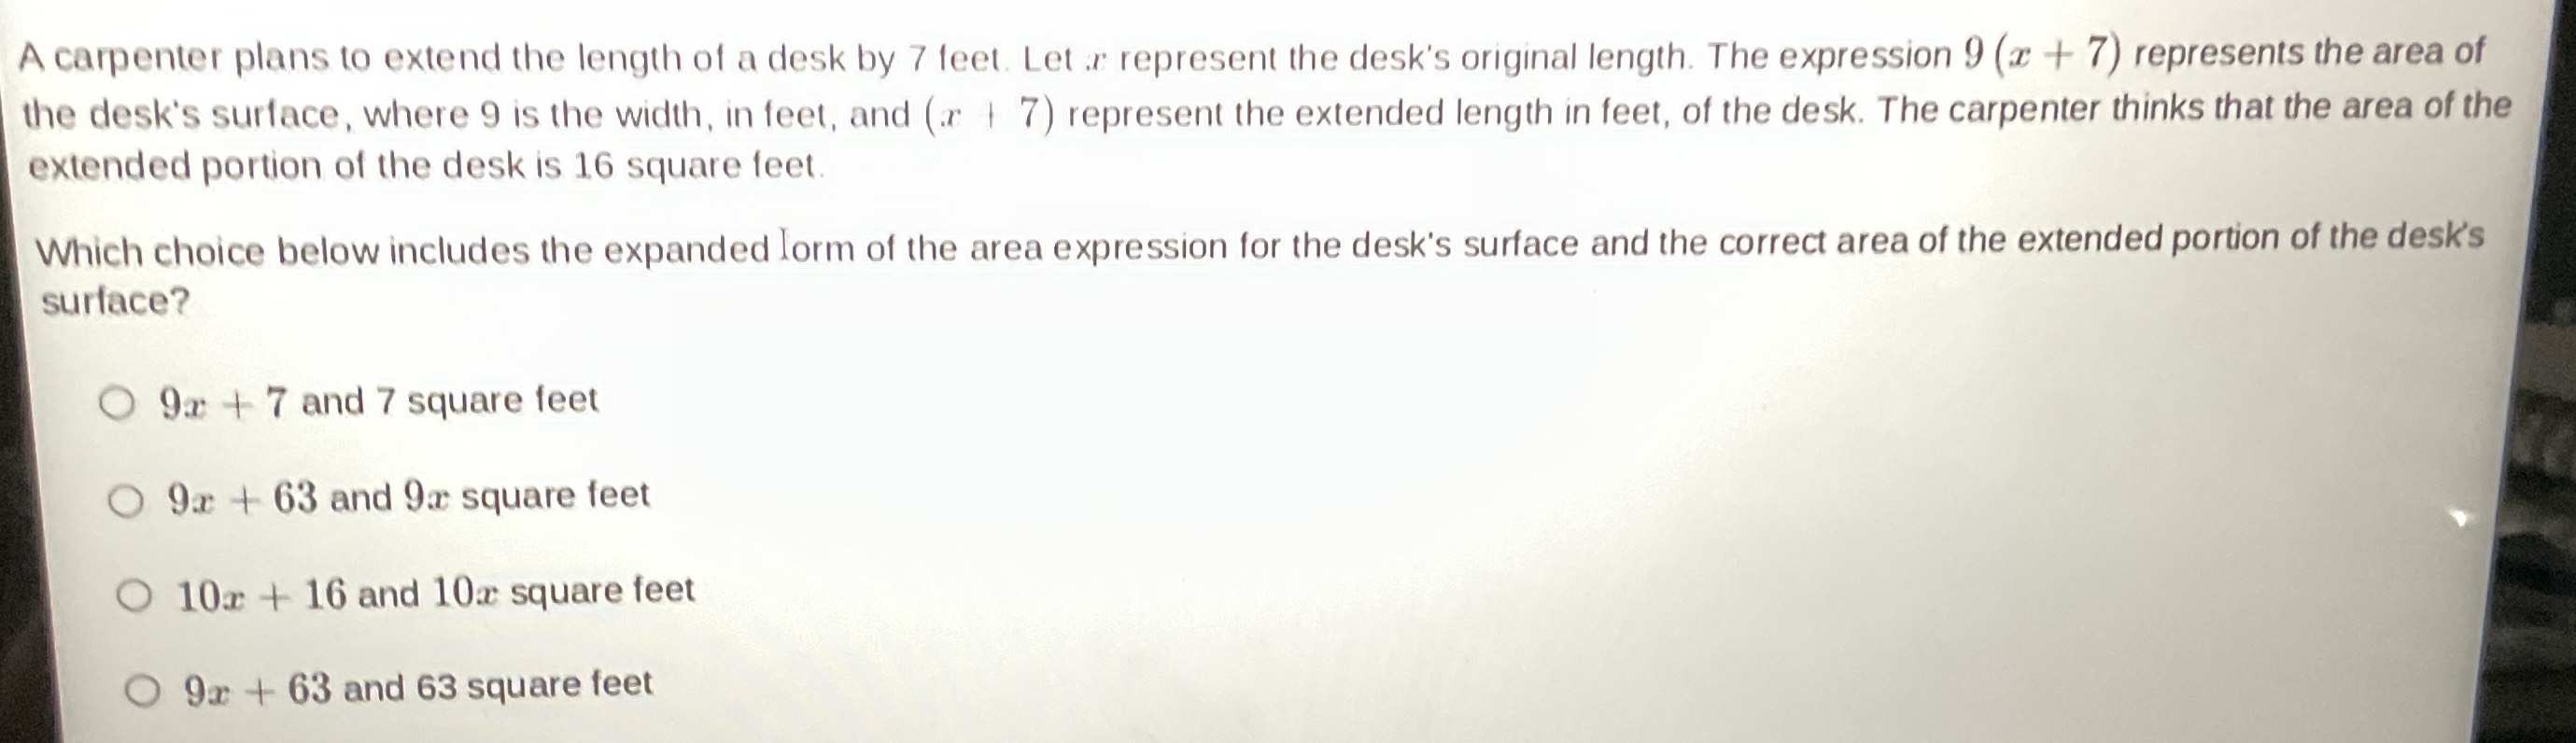 A carpenter plans to extend the length of a desk b...